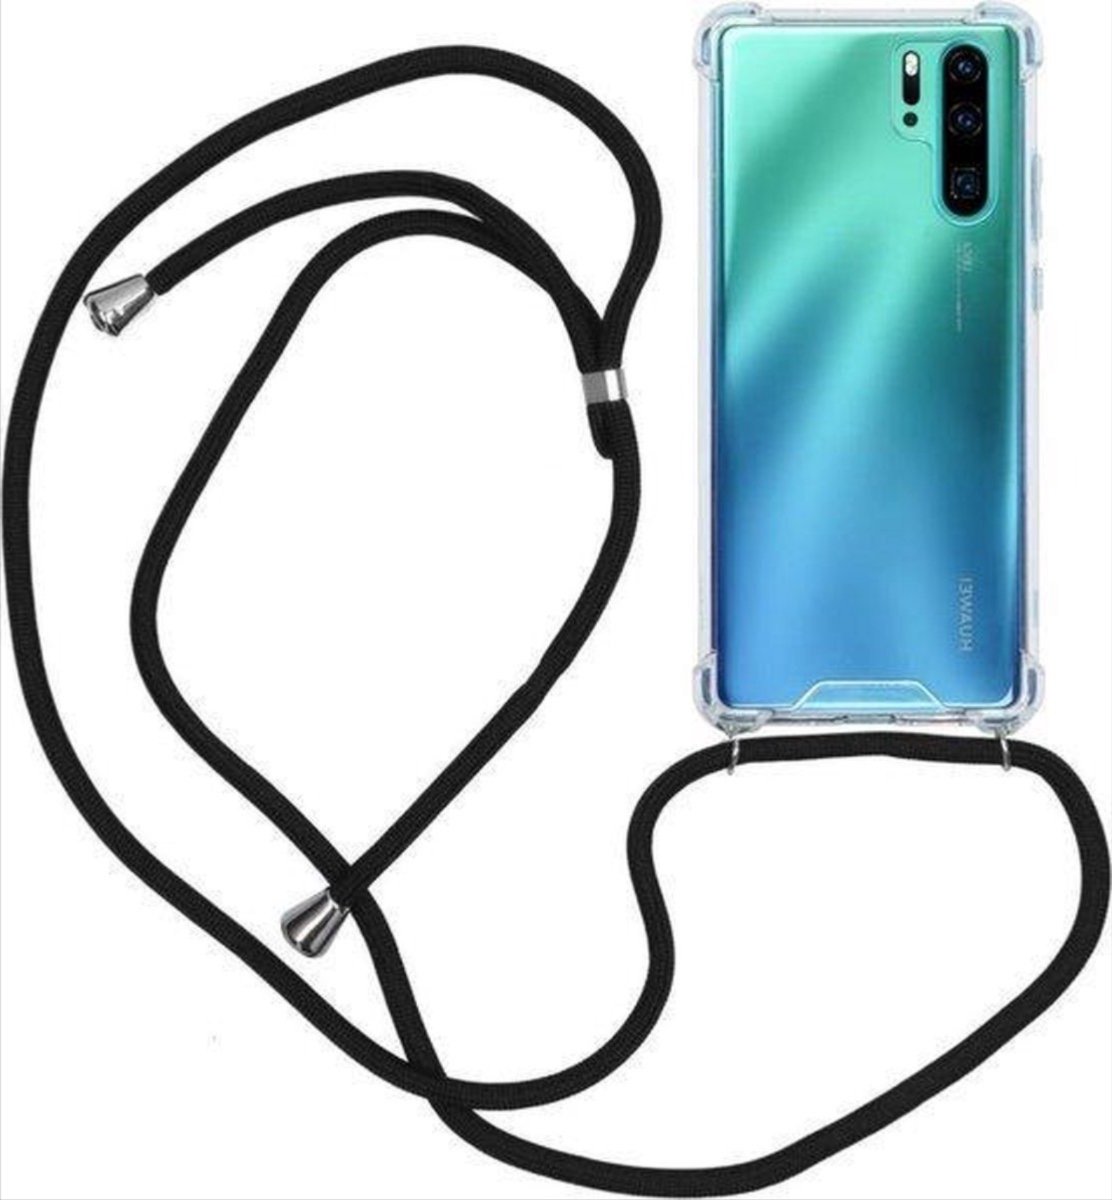 CHPN - Telefoonhoesje - Transparant - Met koord - Geschikt voor Huawei P30 pro - Telefoonhoesje - Phonecover - Huawei P30 pro - Phonecase -Telefoonhoes met koord